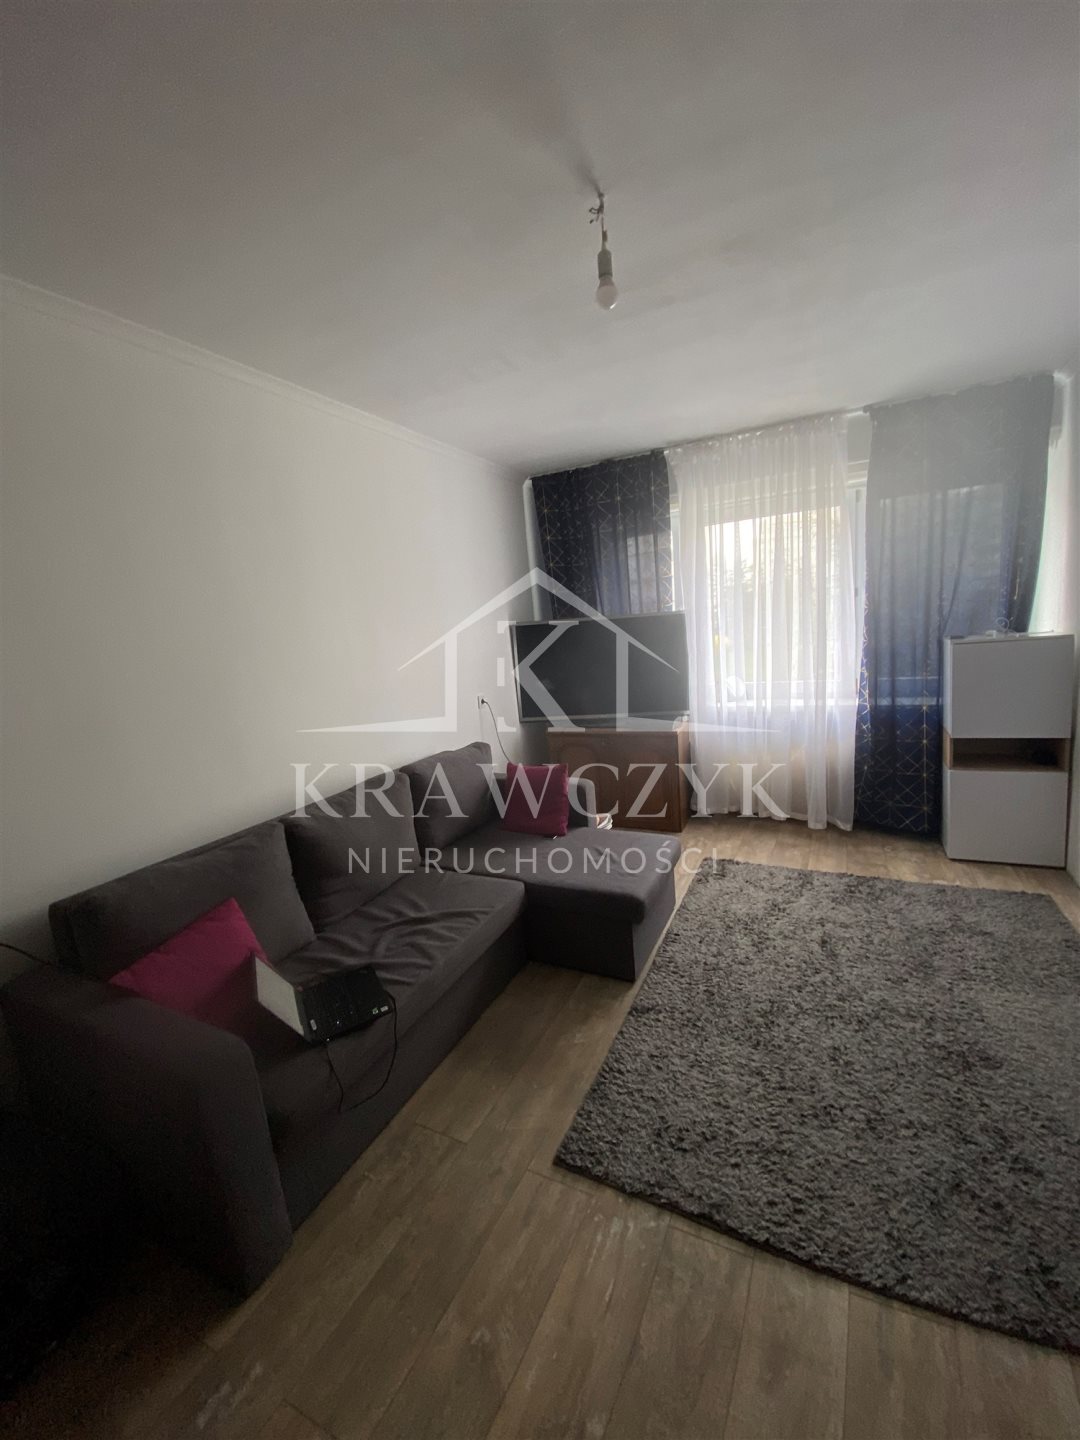 Mieszkanie, 3 pok., 60 m2, Szczecin Kaliny (3)